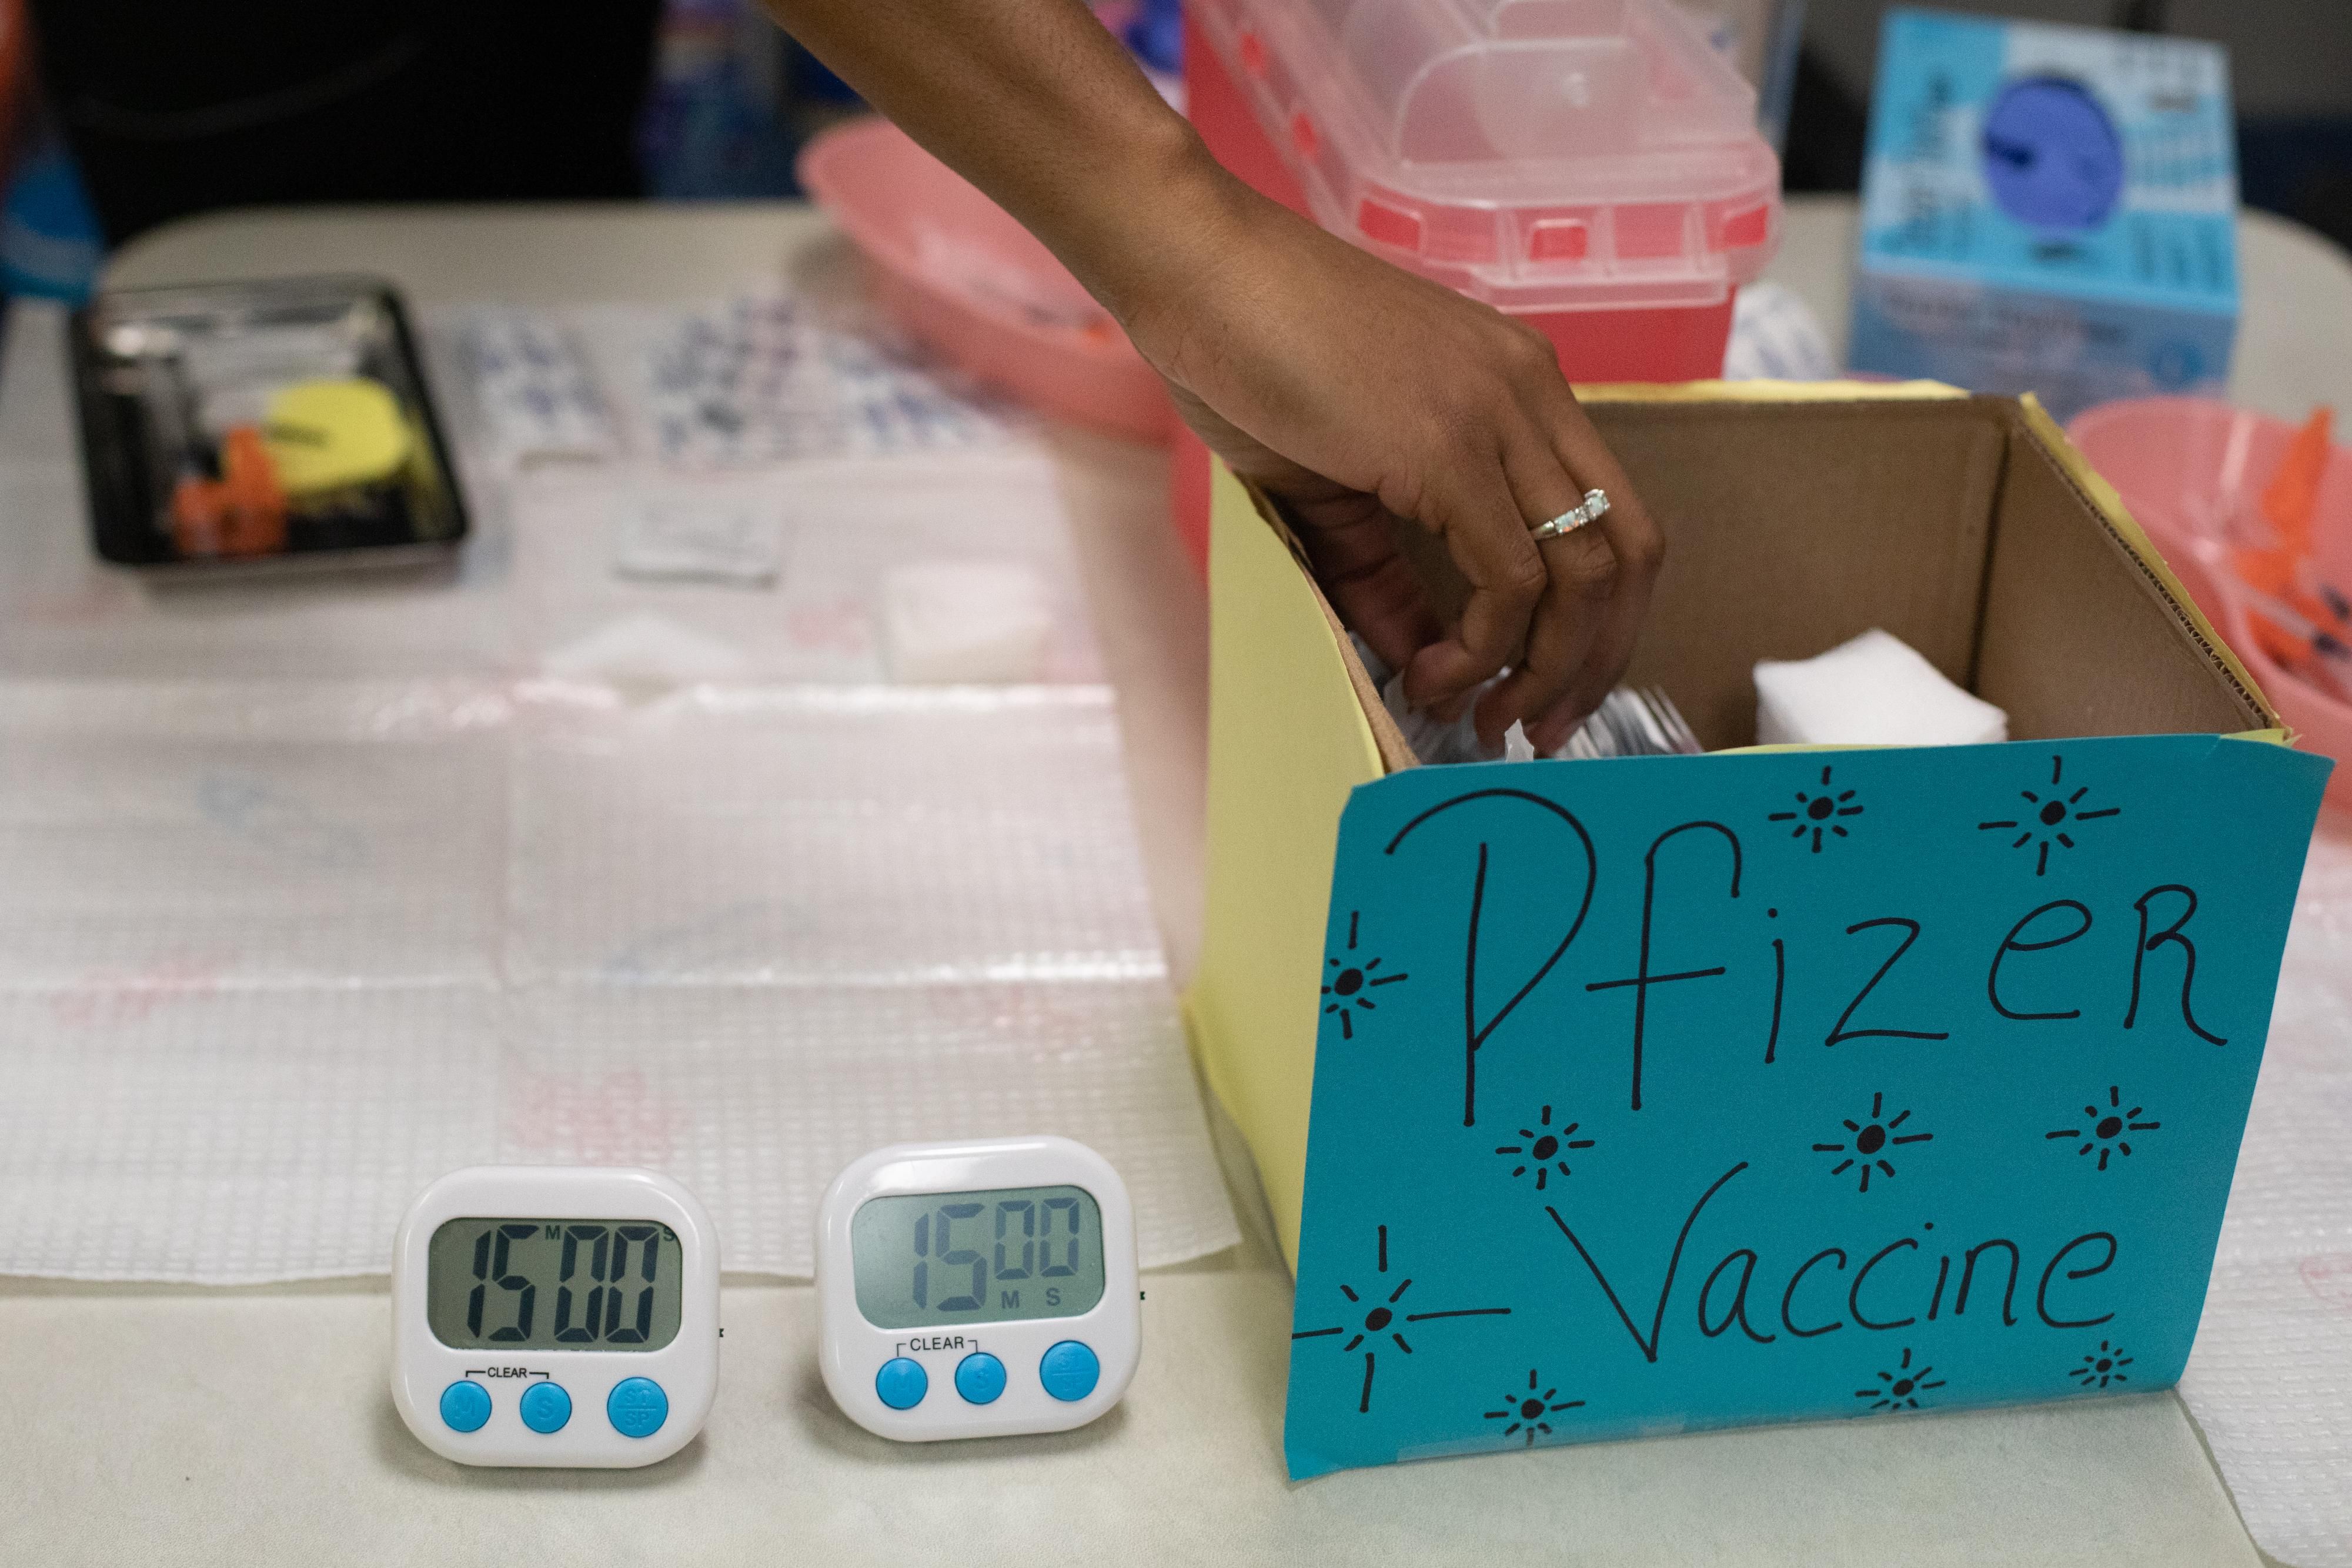  Pfizer безкоштовно поставить бідним країнам вакцину від коронавірусу